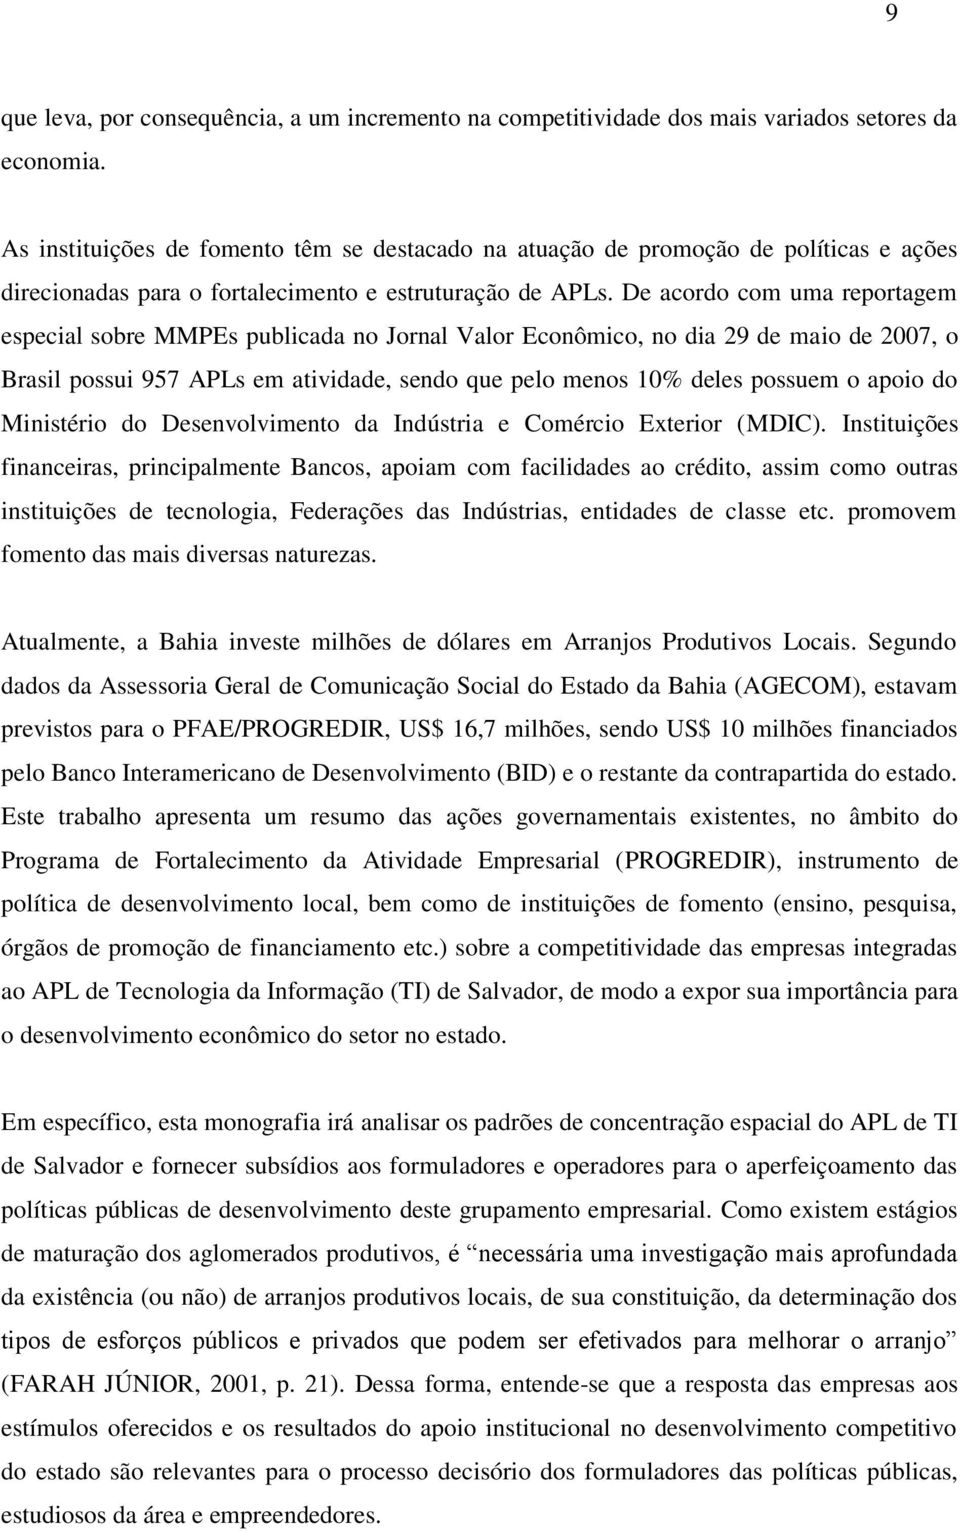 De acordo com uma reportagem especial sobre MMPEs publicada no Jornal Valor Econômico, no dia 29 de maio de 2007, o Brasil possui 957 APLs em atividade, sendo que pelo menos 10% deles possuem o apoio